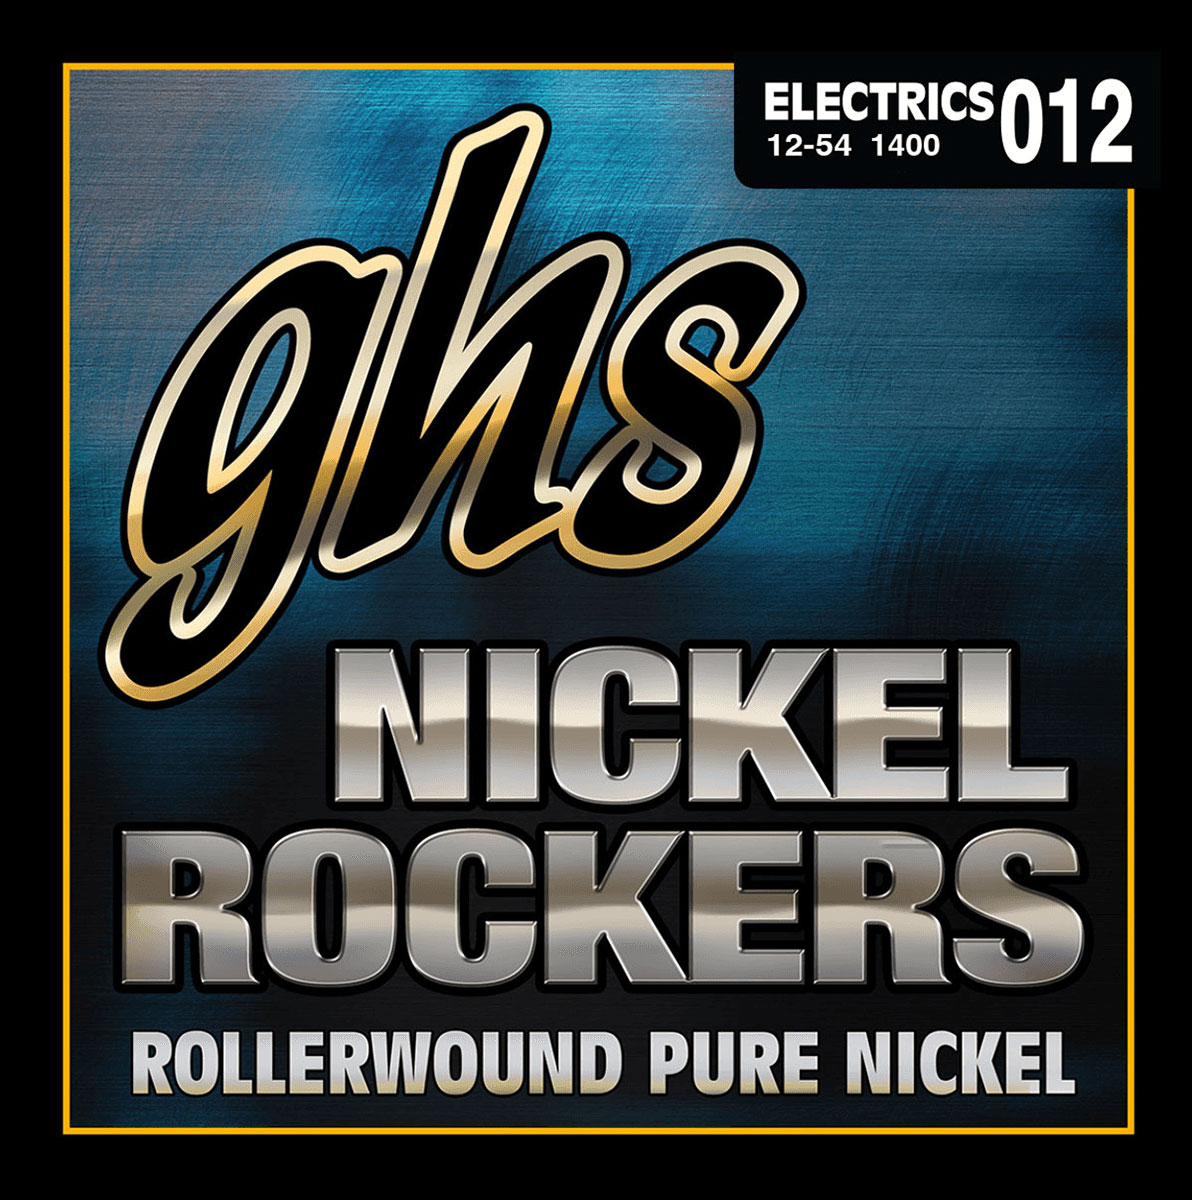 GHS 1400 NICKEL ROCKERS MEDIUM LIGHT 12-54